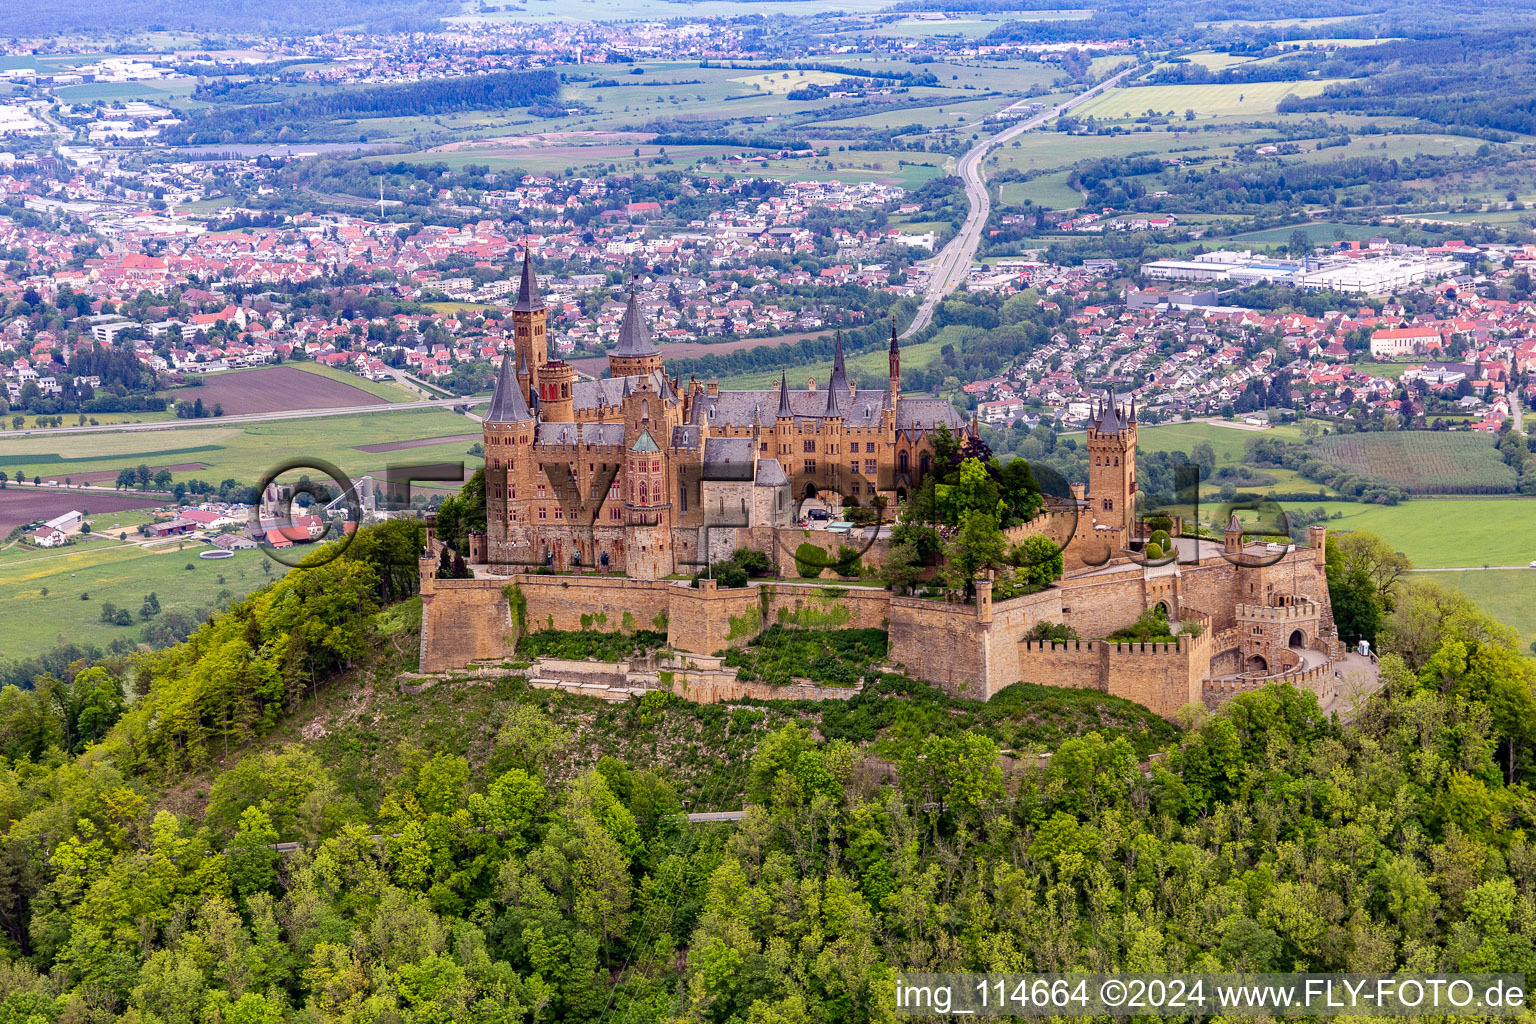 Luftbild von Burg Hohenzollern in Bisingen im Bundesland Baden-Württemberg, Deutschland